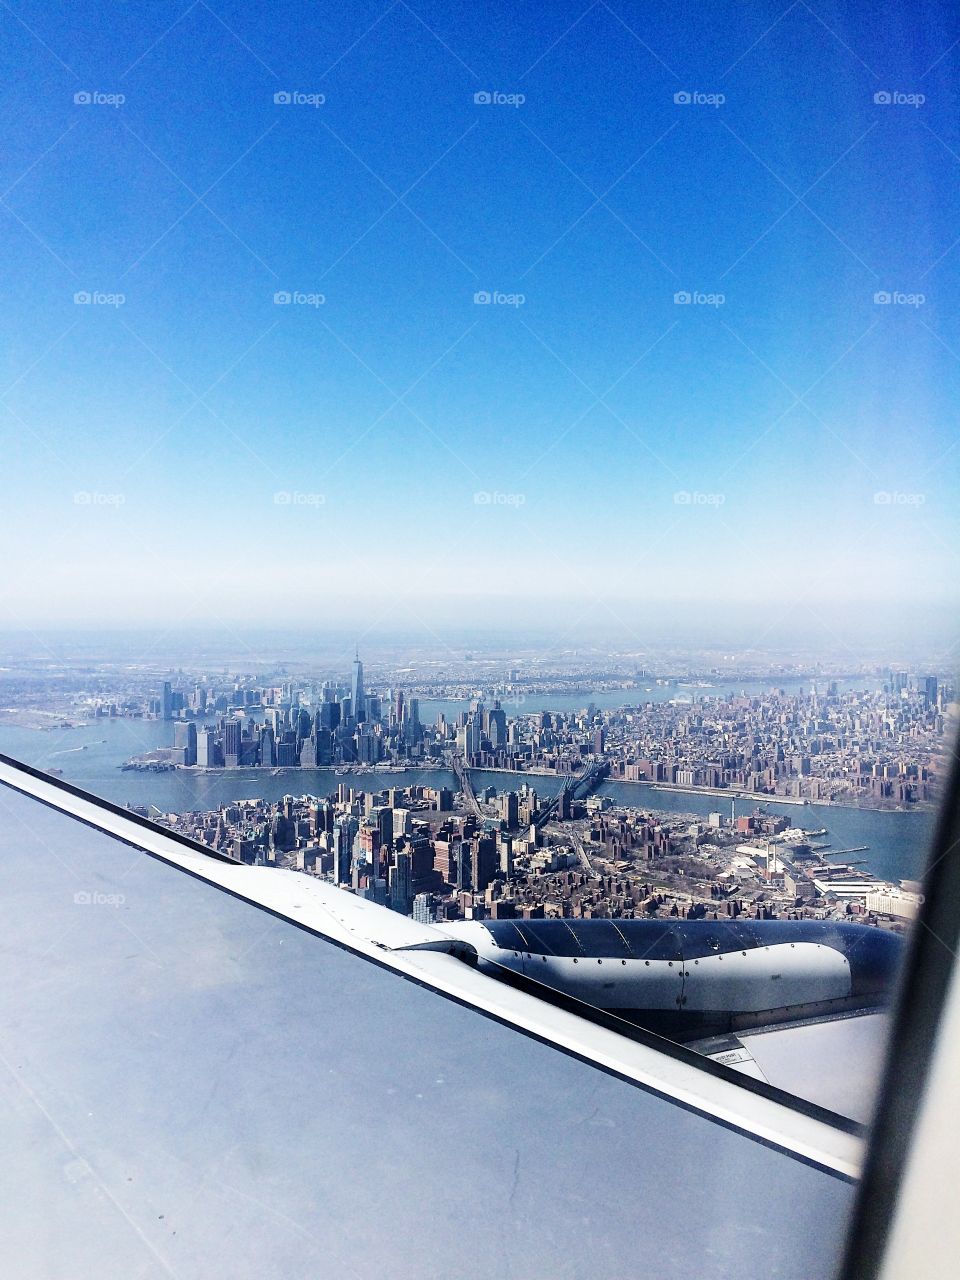 NYC skyline 